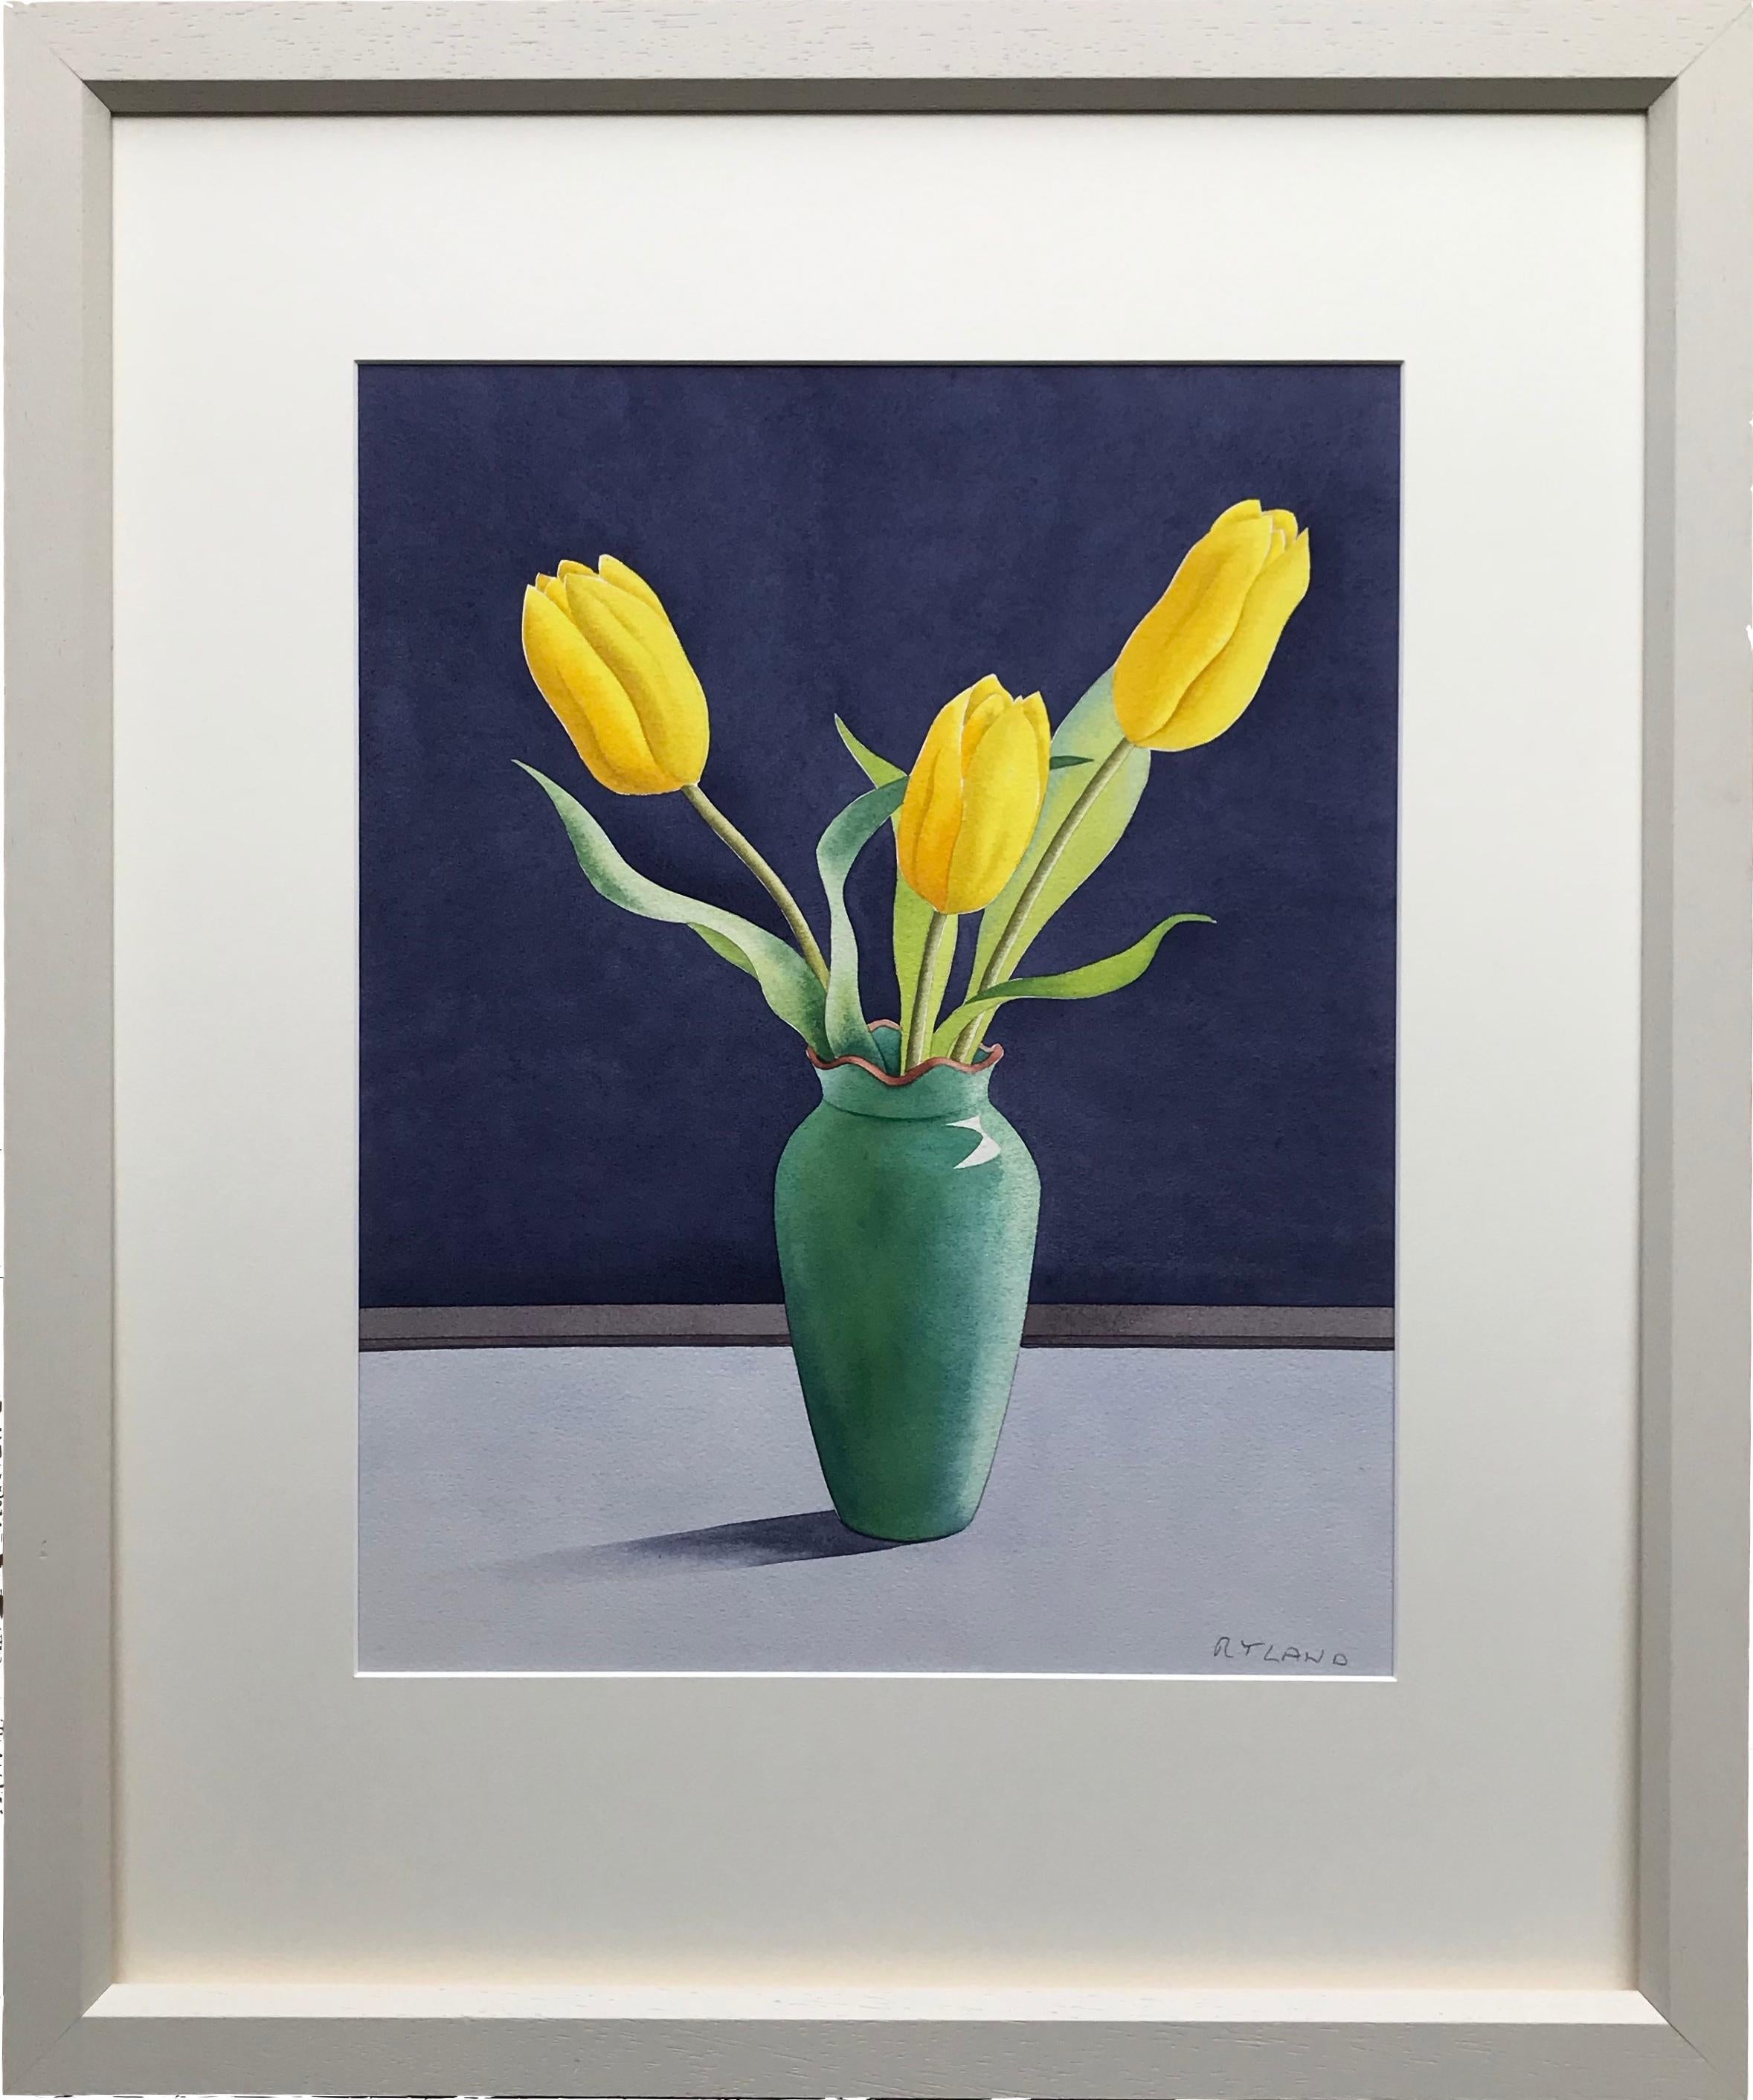 Christoper Ryland (geboren 1951)
Drei gelbe Tulpen
Unterzeichnet
Aquarell
15½ x12¼ Zoll

Ein wirklich auffälliges Beispiel mit dem auffälligen Kontrast der leuchtend gelben Tulpen vor einem dunkelblauen Hintergrund.

Christopher Rylands Blumenbilder